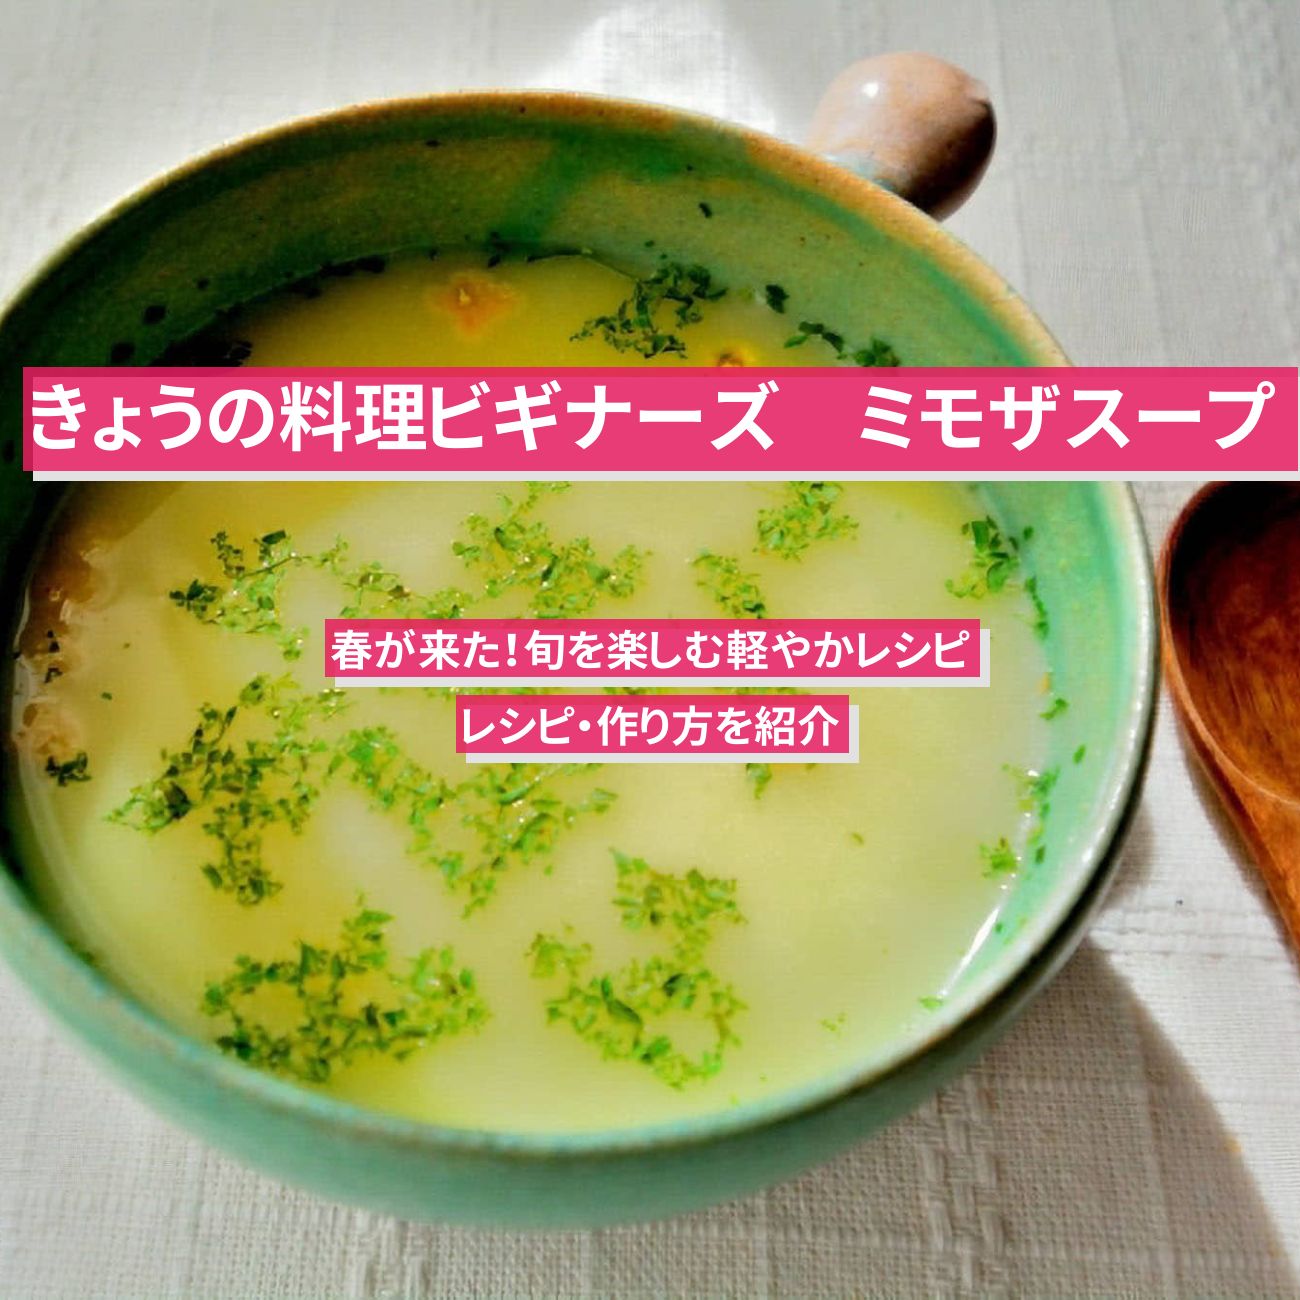 【きょうの料理ビギナーズ】『ミモザスープ』のレシピ・作り方を紹介